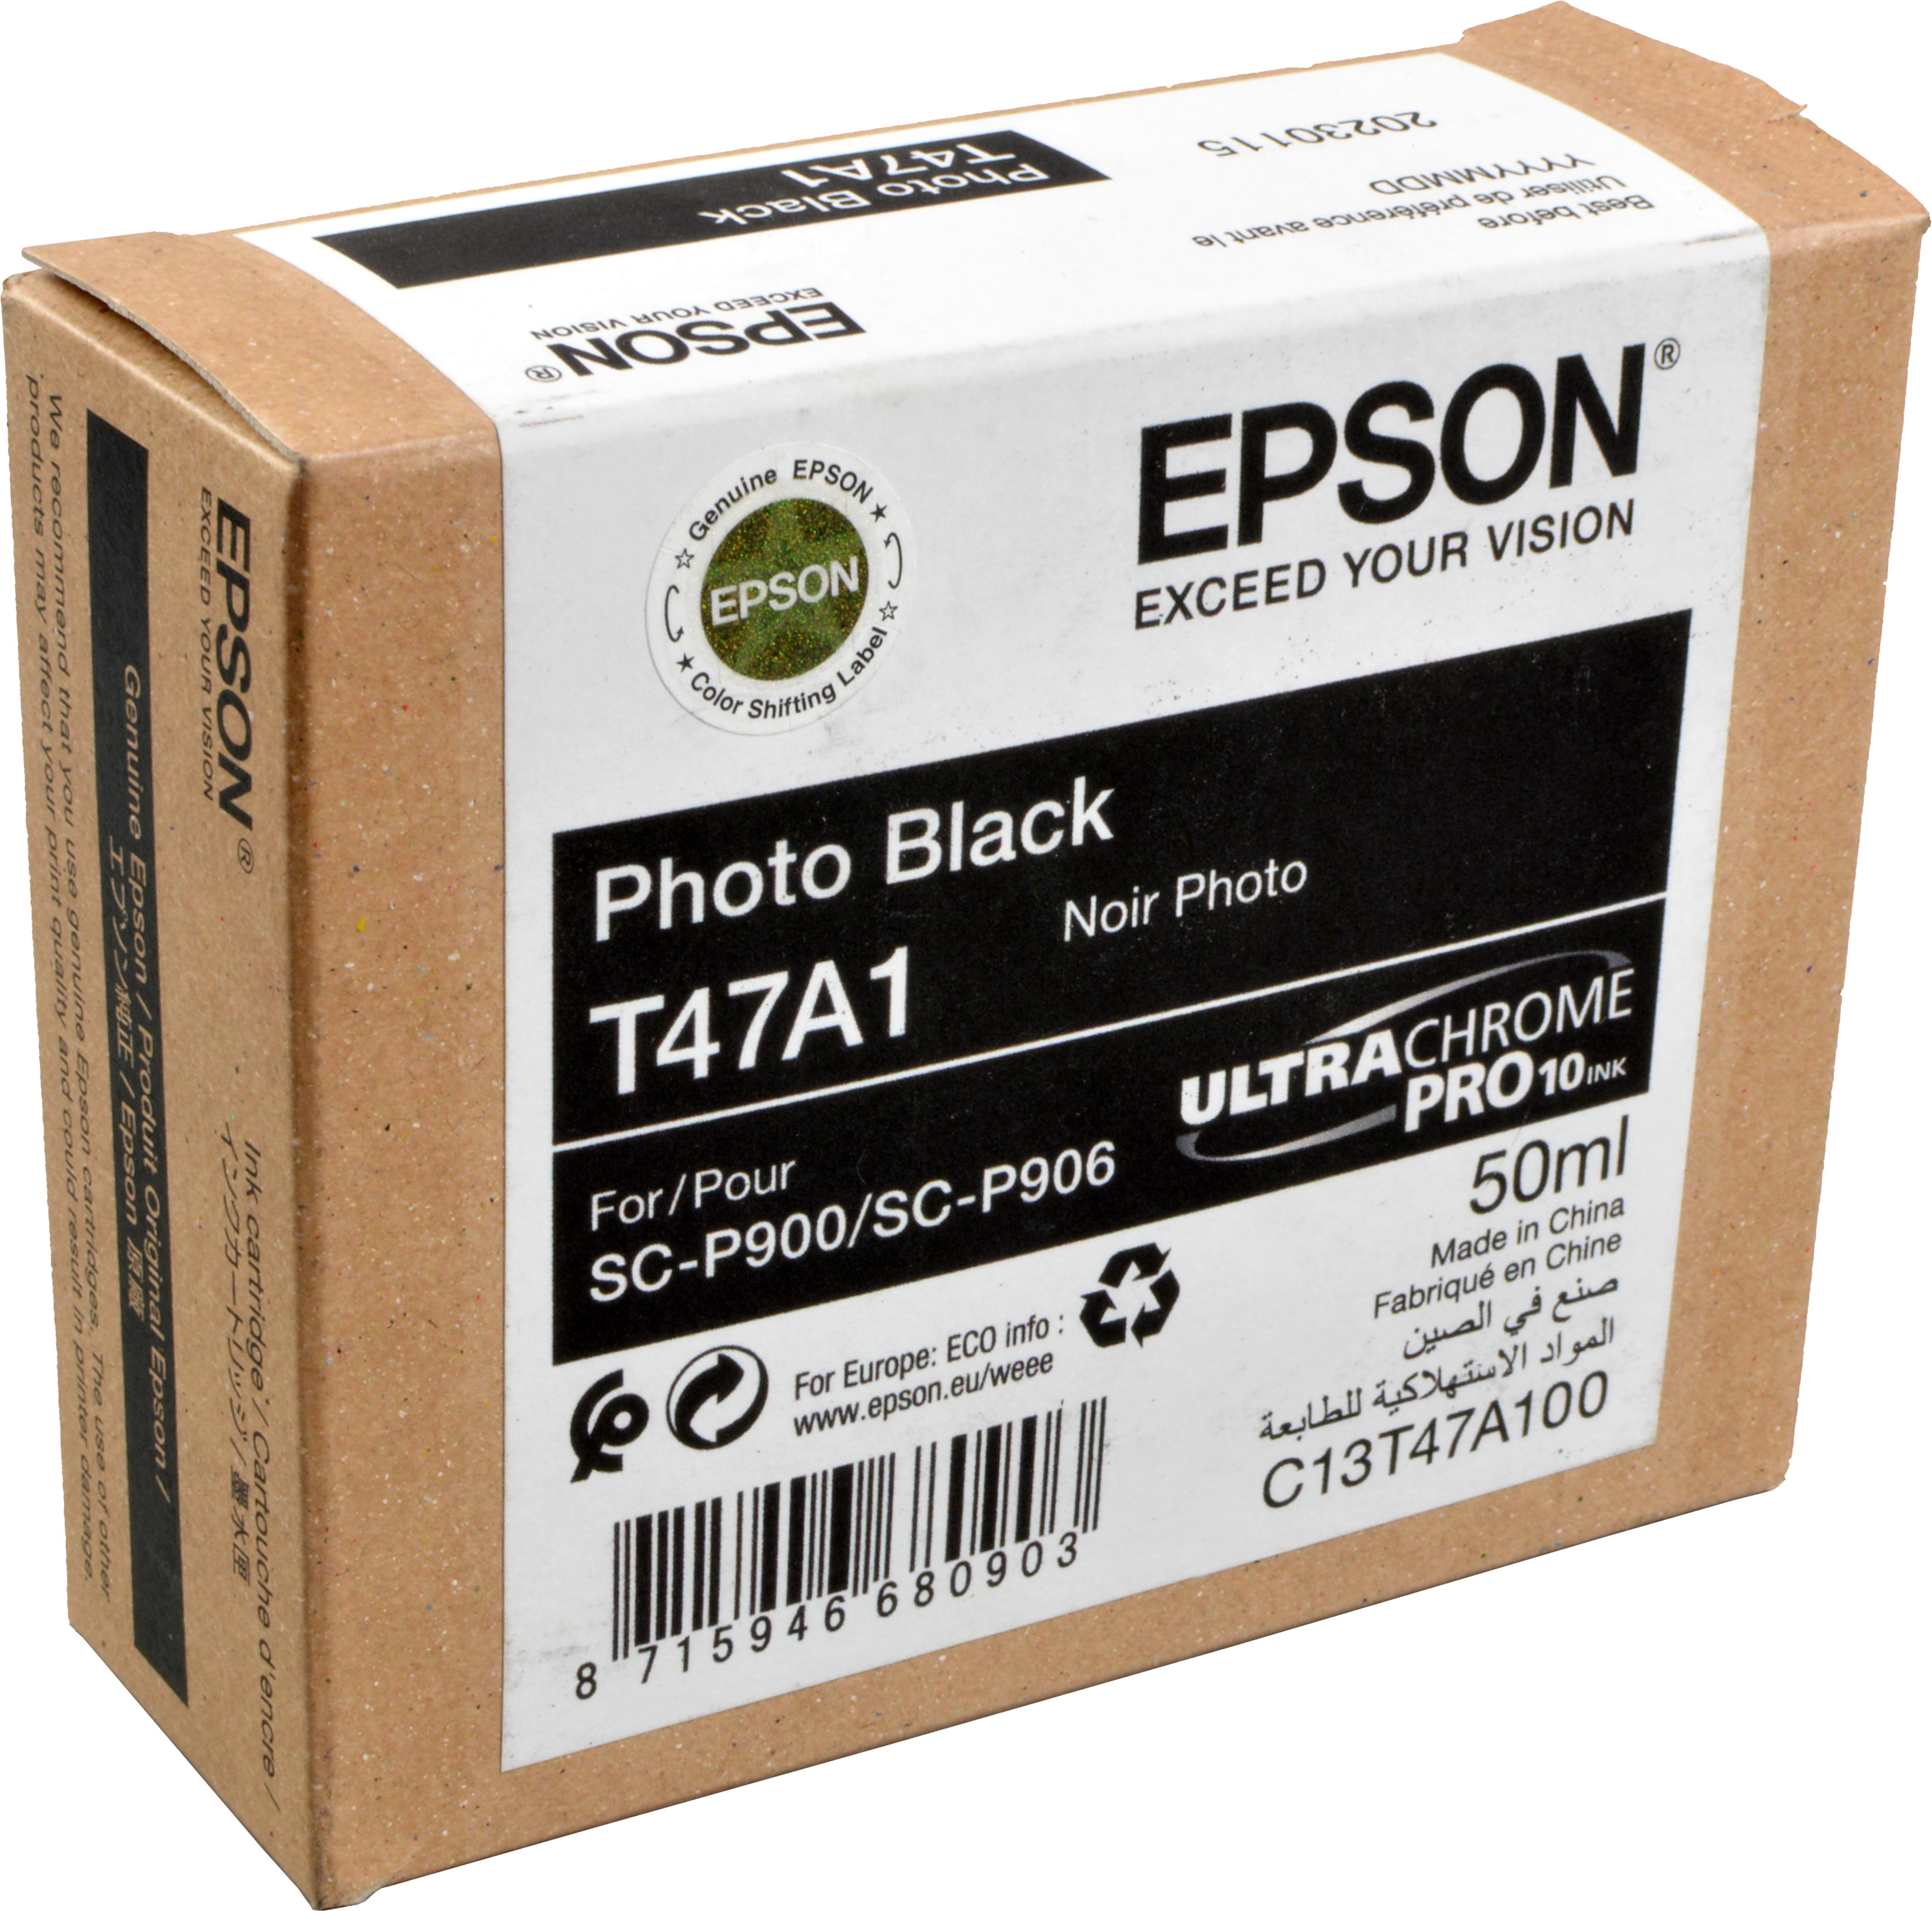 Epson Tinte C13T47A100  T47A1  foto schwarz